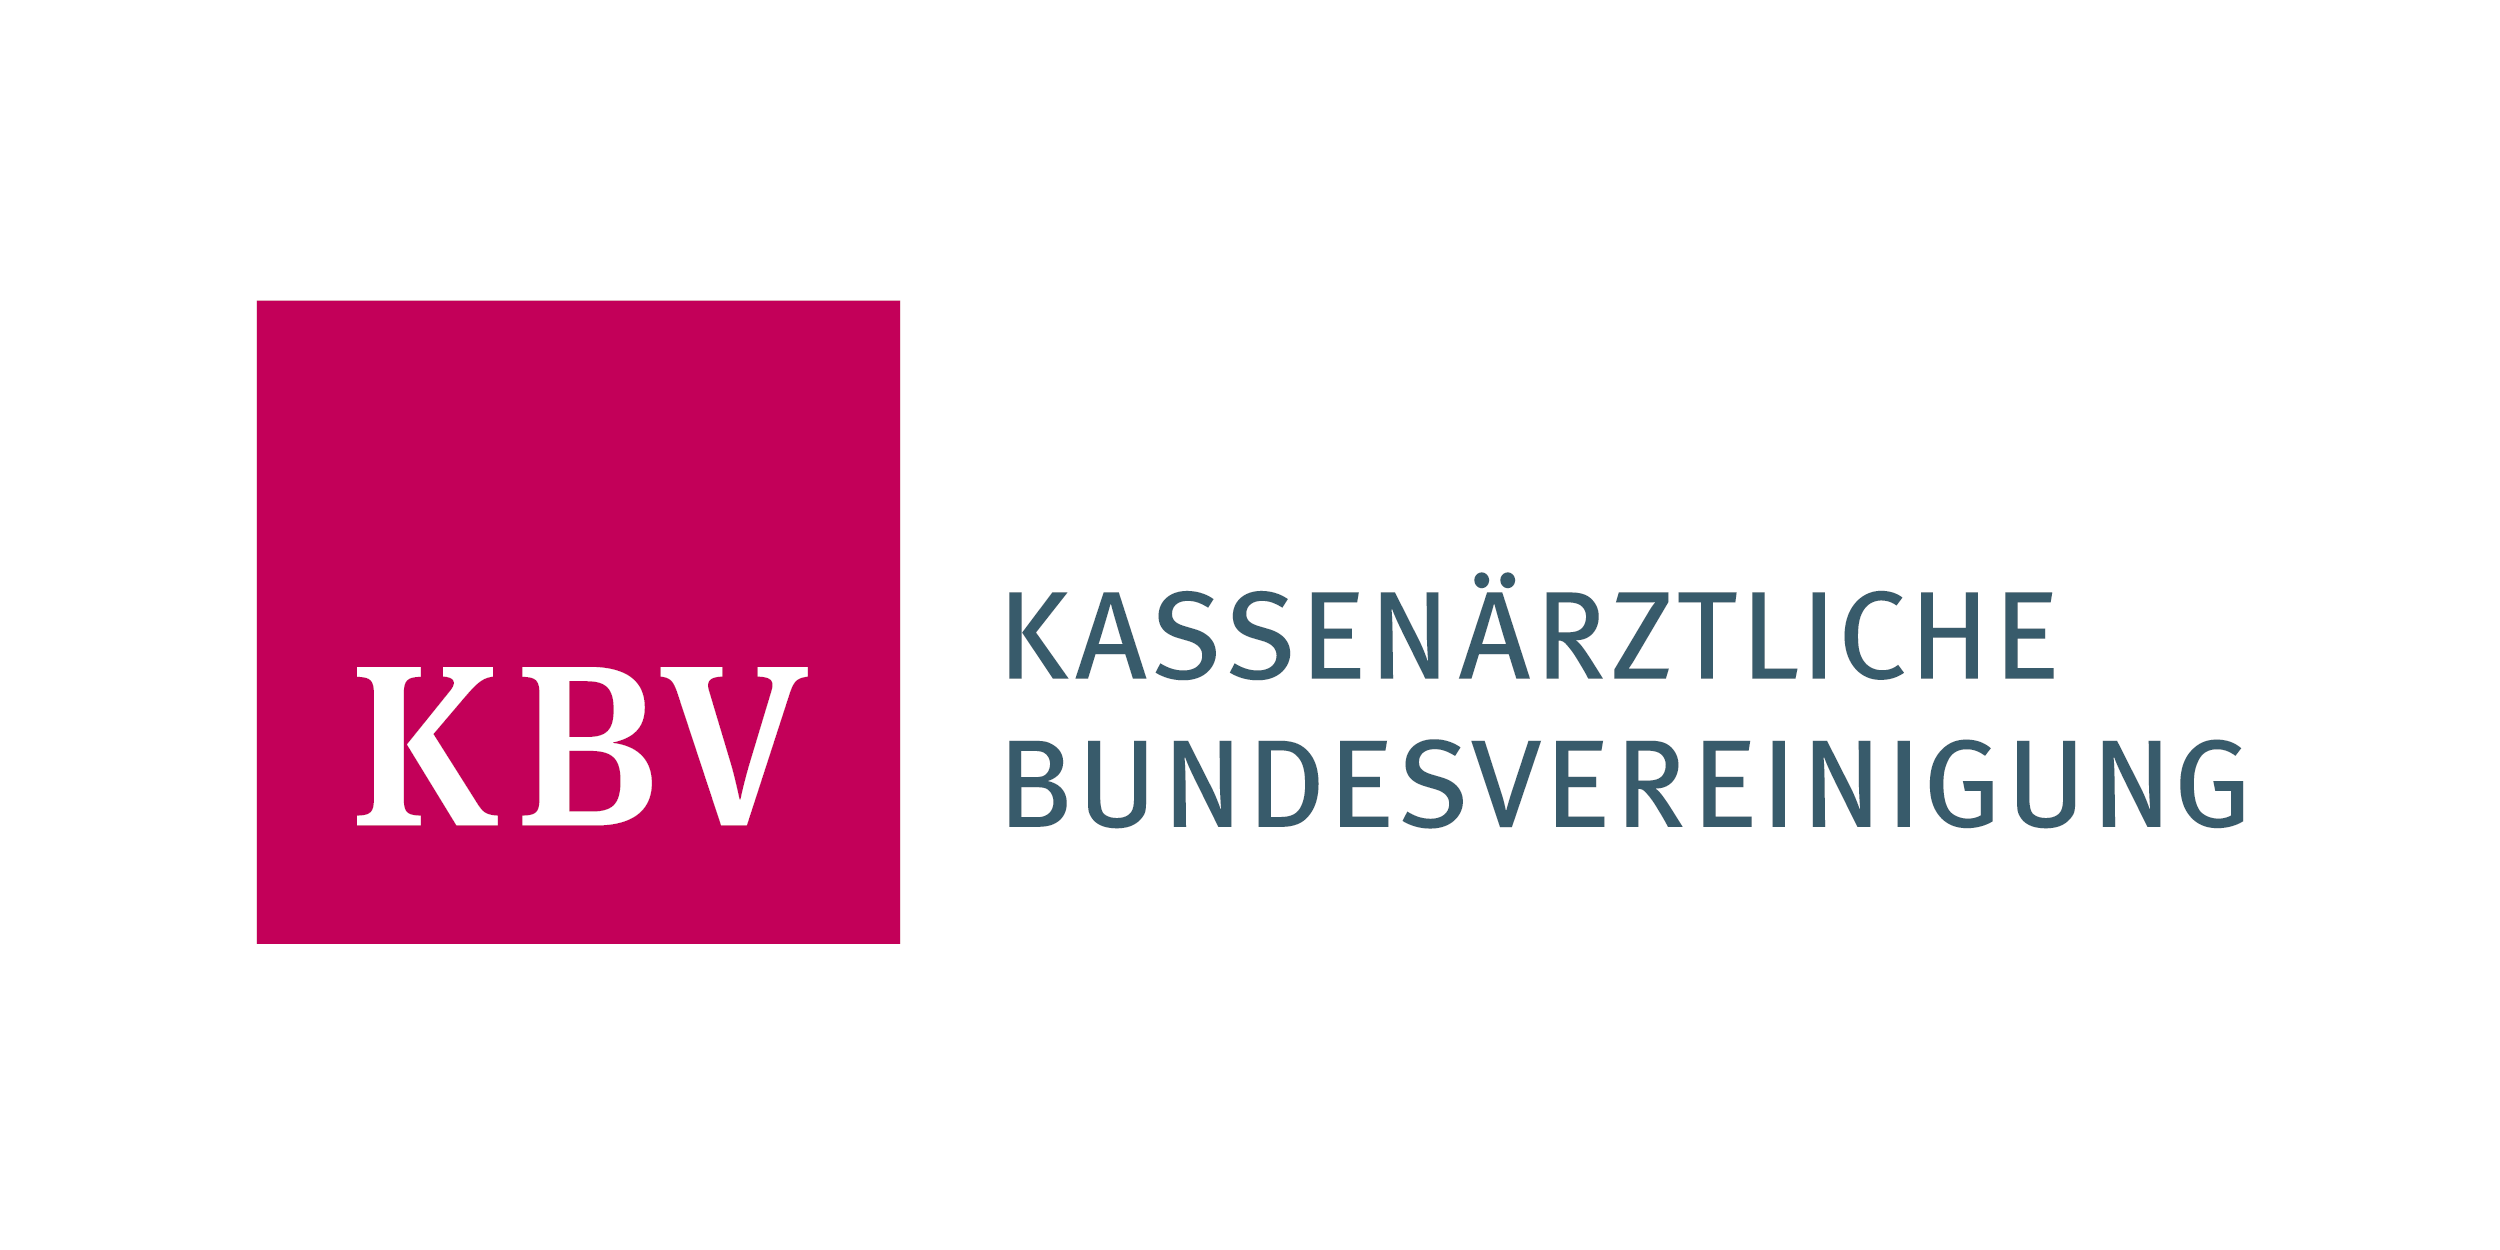 Das Bild zeigt das Logo der KBV.